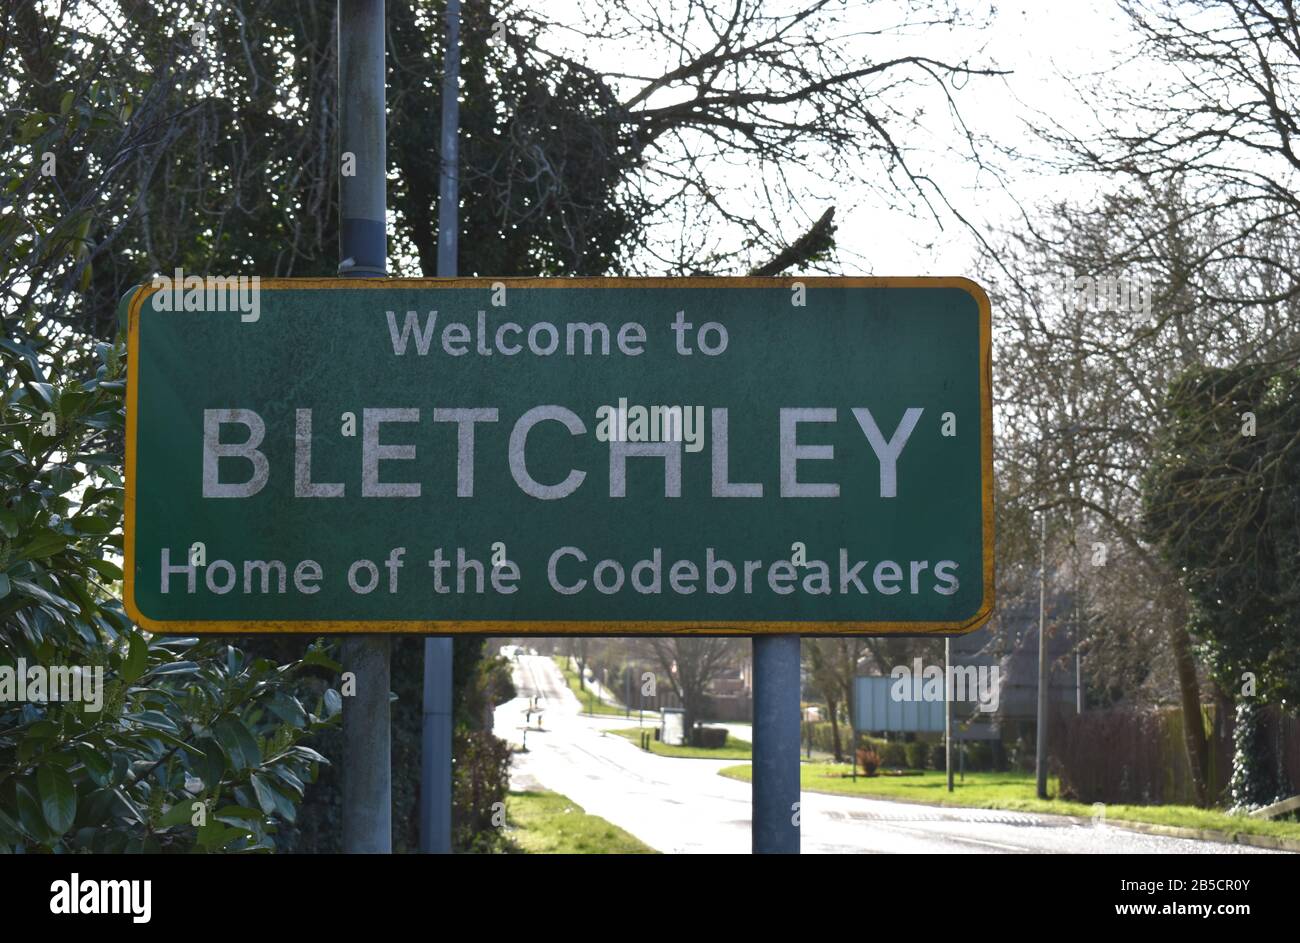 Straßenschild "Willkommen in Bletchley - Heimat der Codebreakers". Dies bezieht sich auf Bletchley Park, einst das streng geheime Haus der Codebrecher des zweiten Weltkriegs. Stockfoto